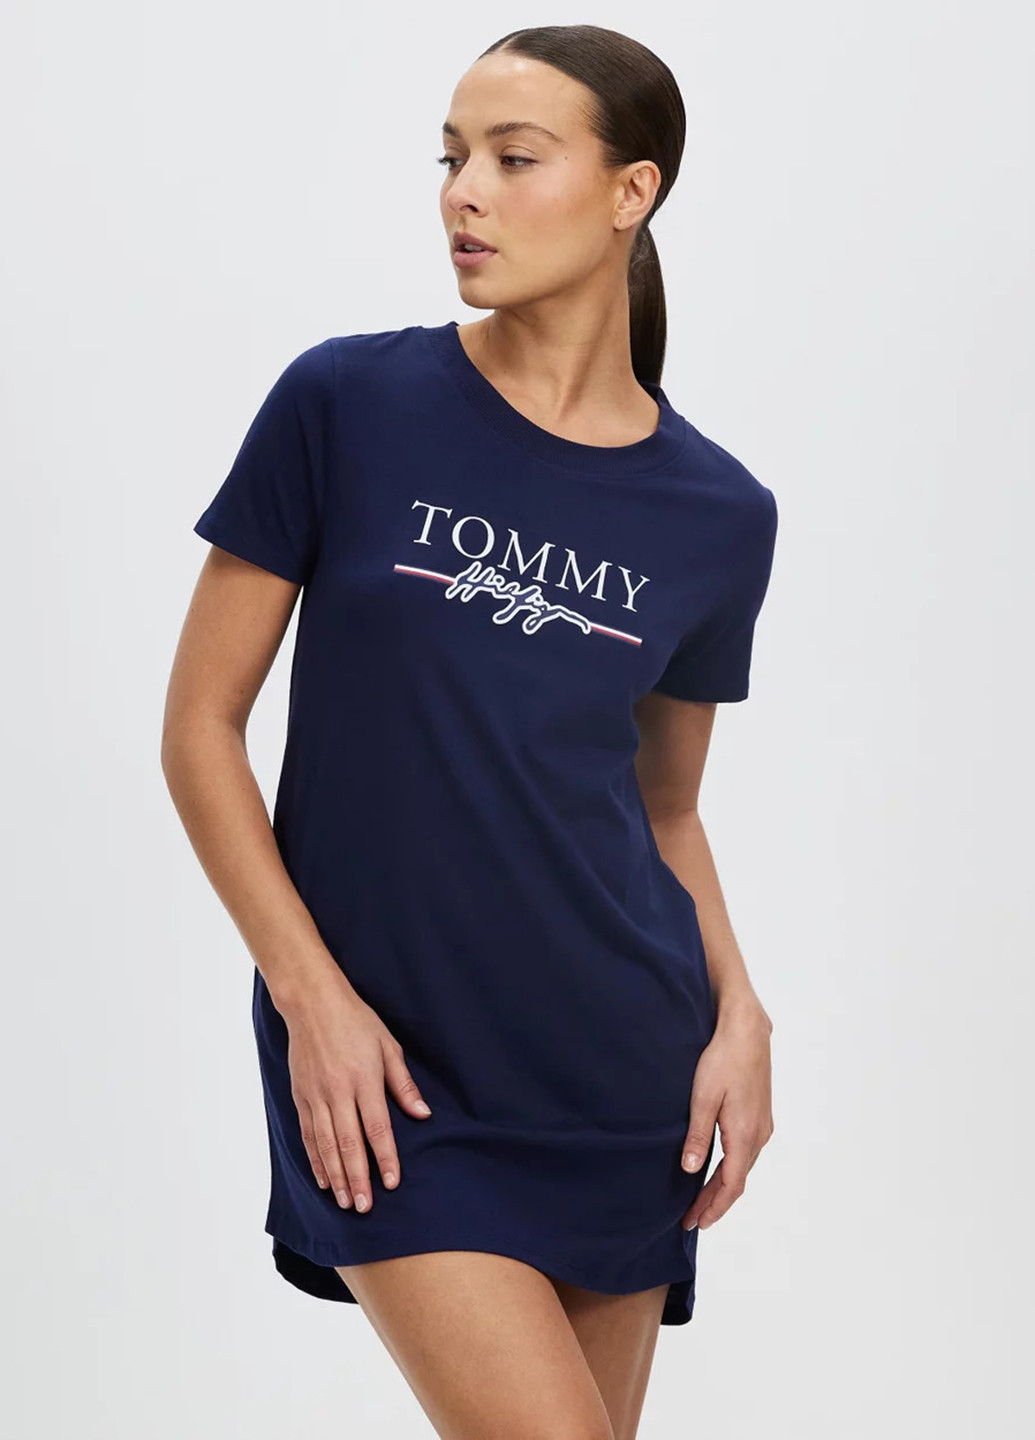 Синее домашнее платье платье-футболка Tommy Hilfiger с логотипом